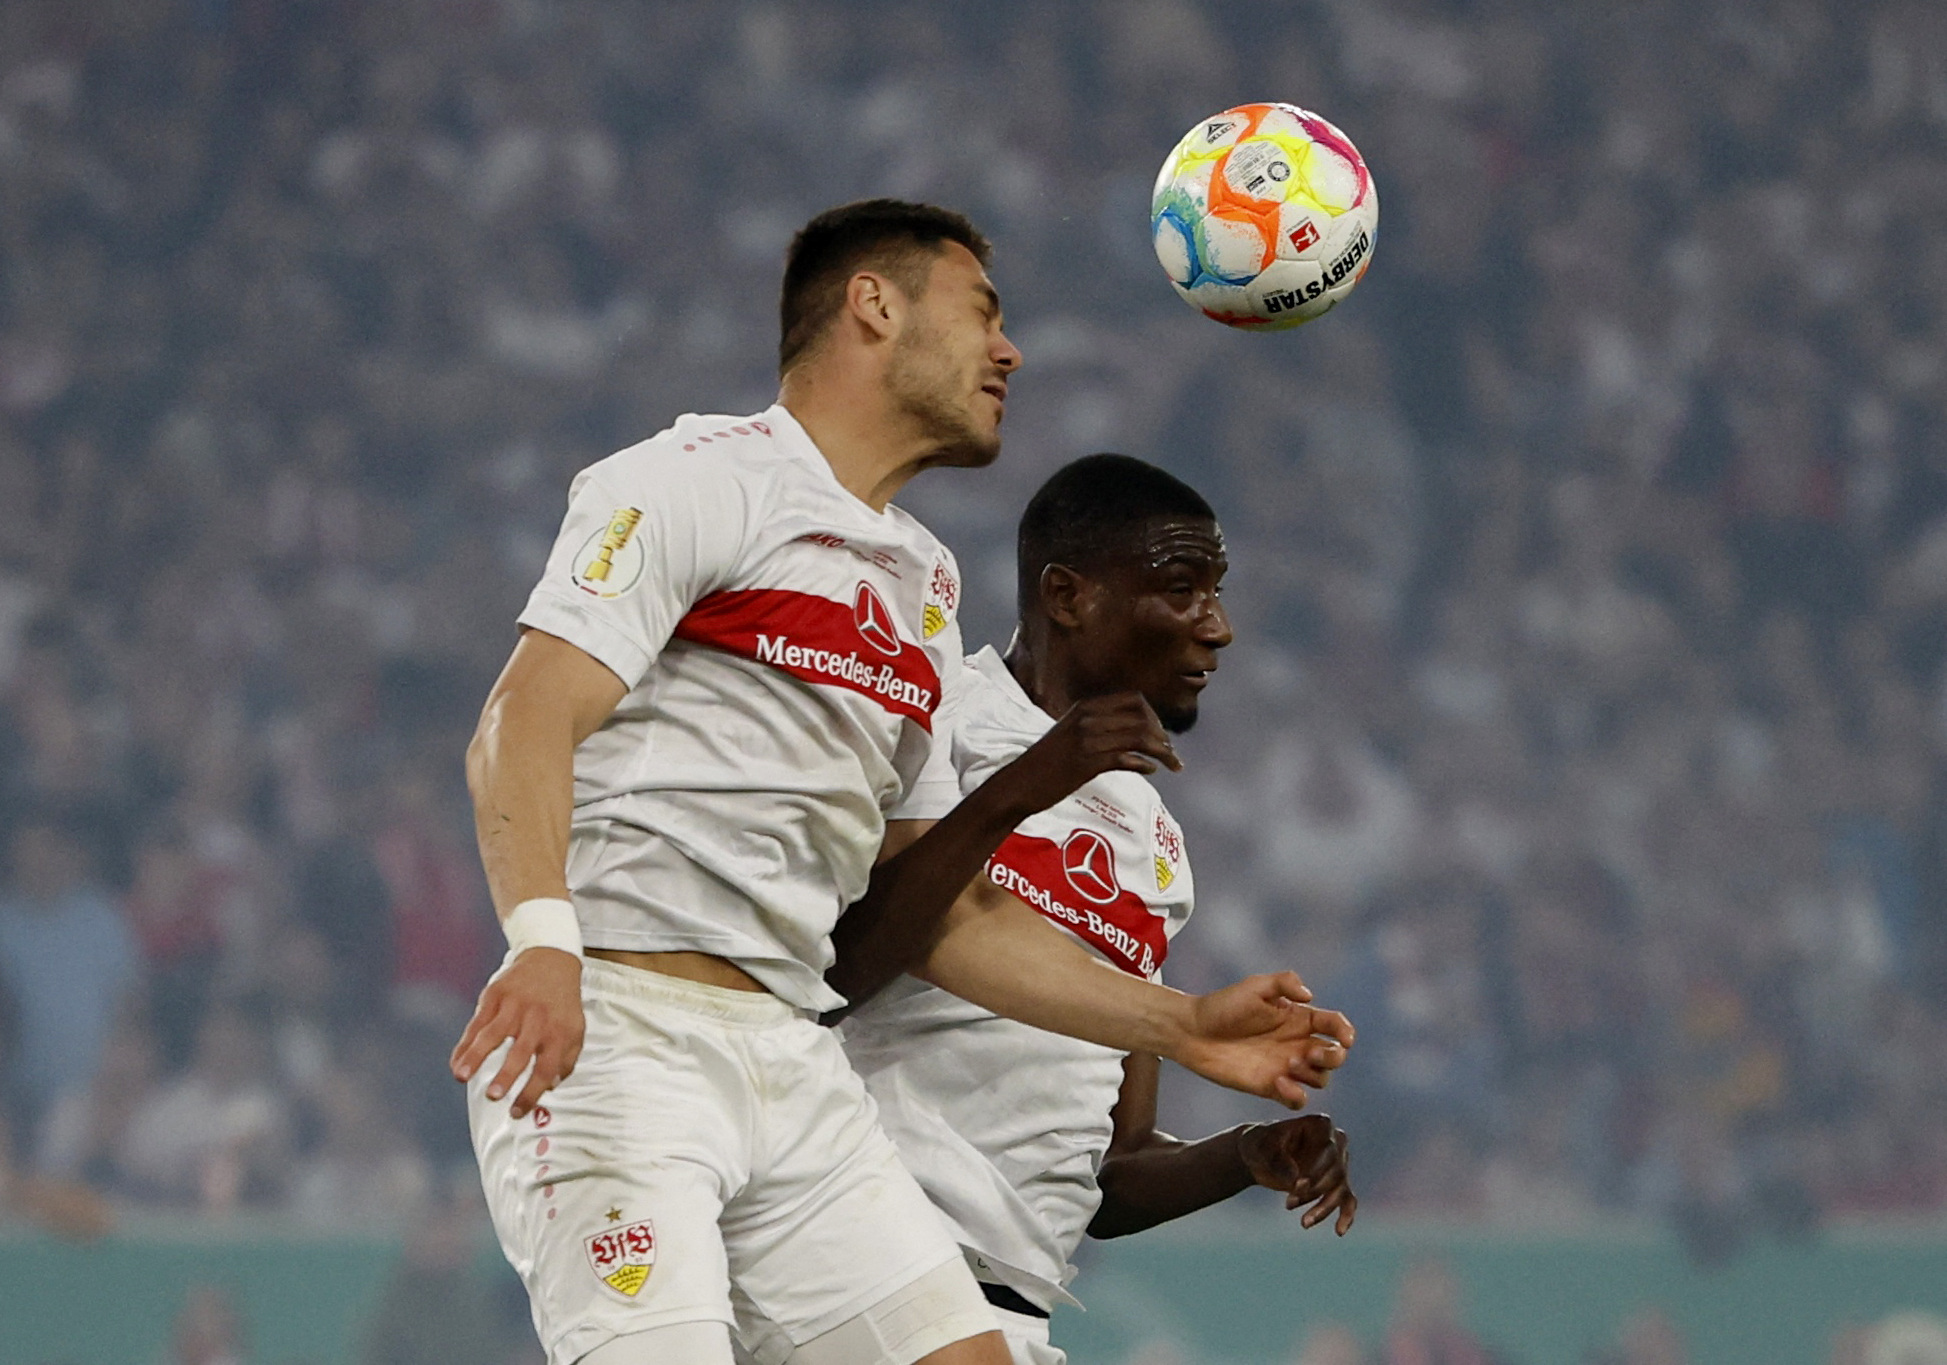 Στουτγκάρδη – Αμβούργο 3-0: Νίκη παραμονής στην Bundesliga με σκόρερ τον Ντίνο Μαυροπάνο